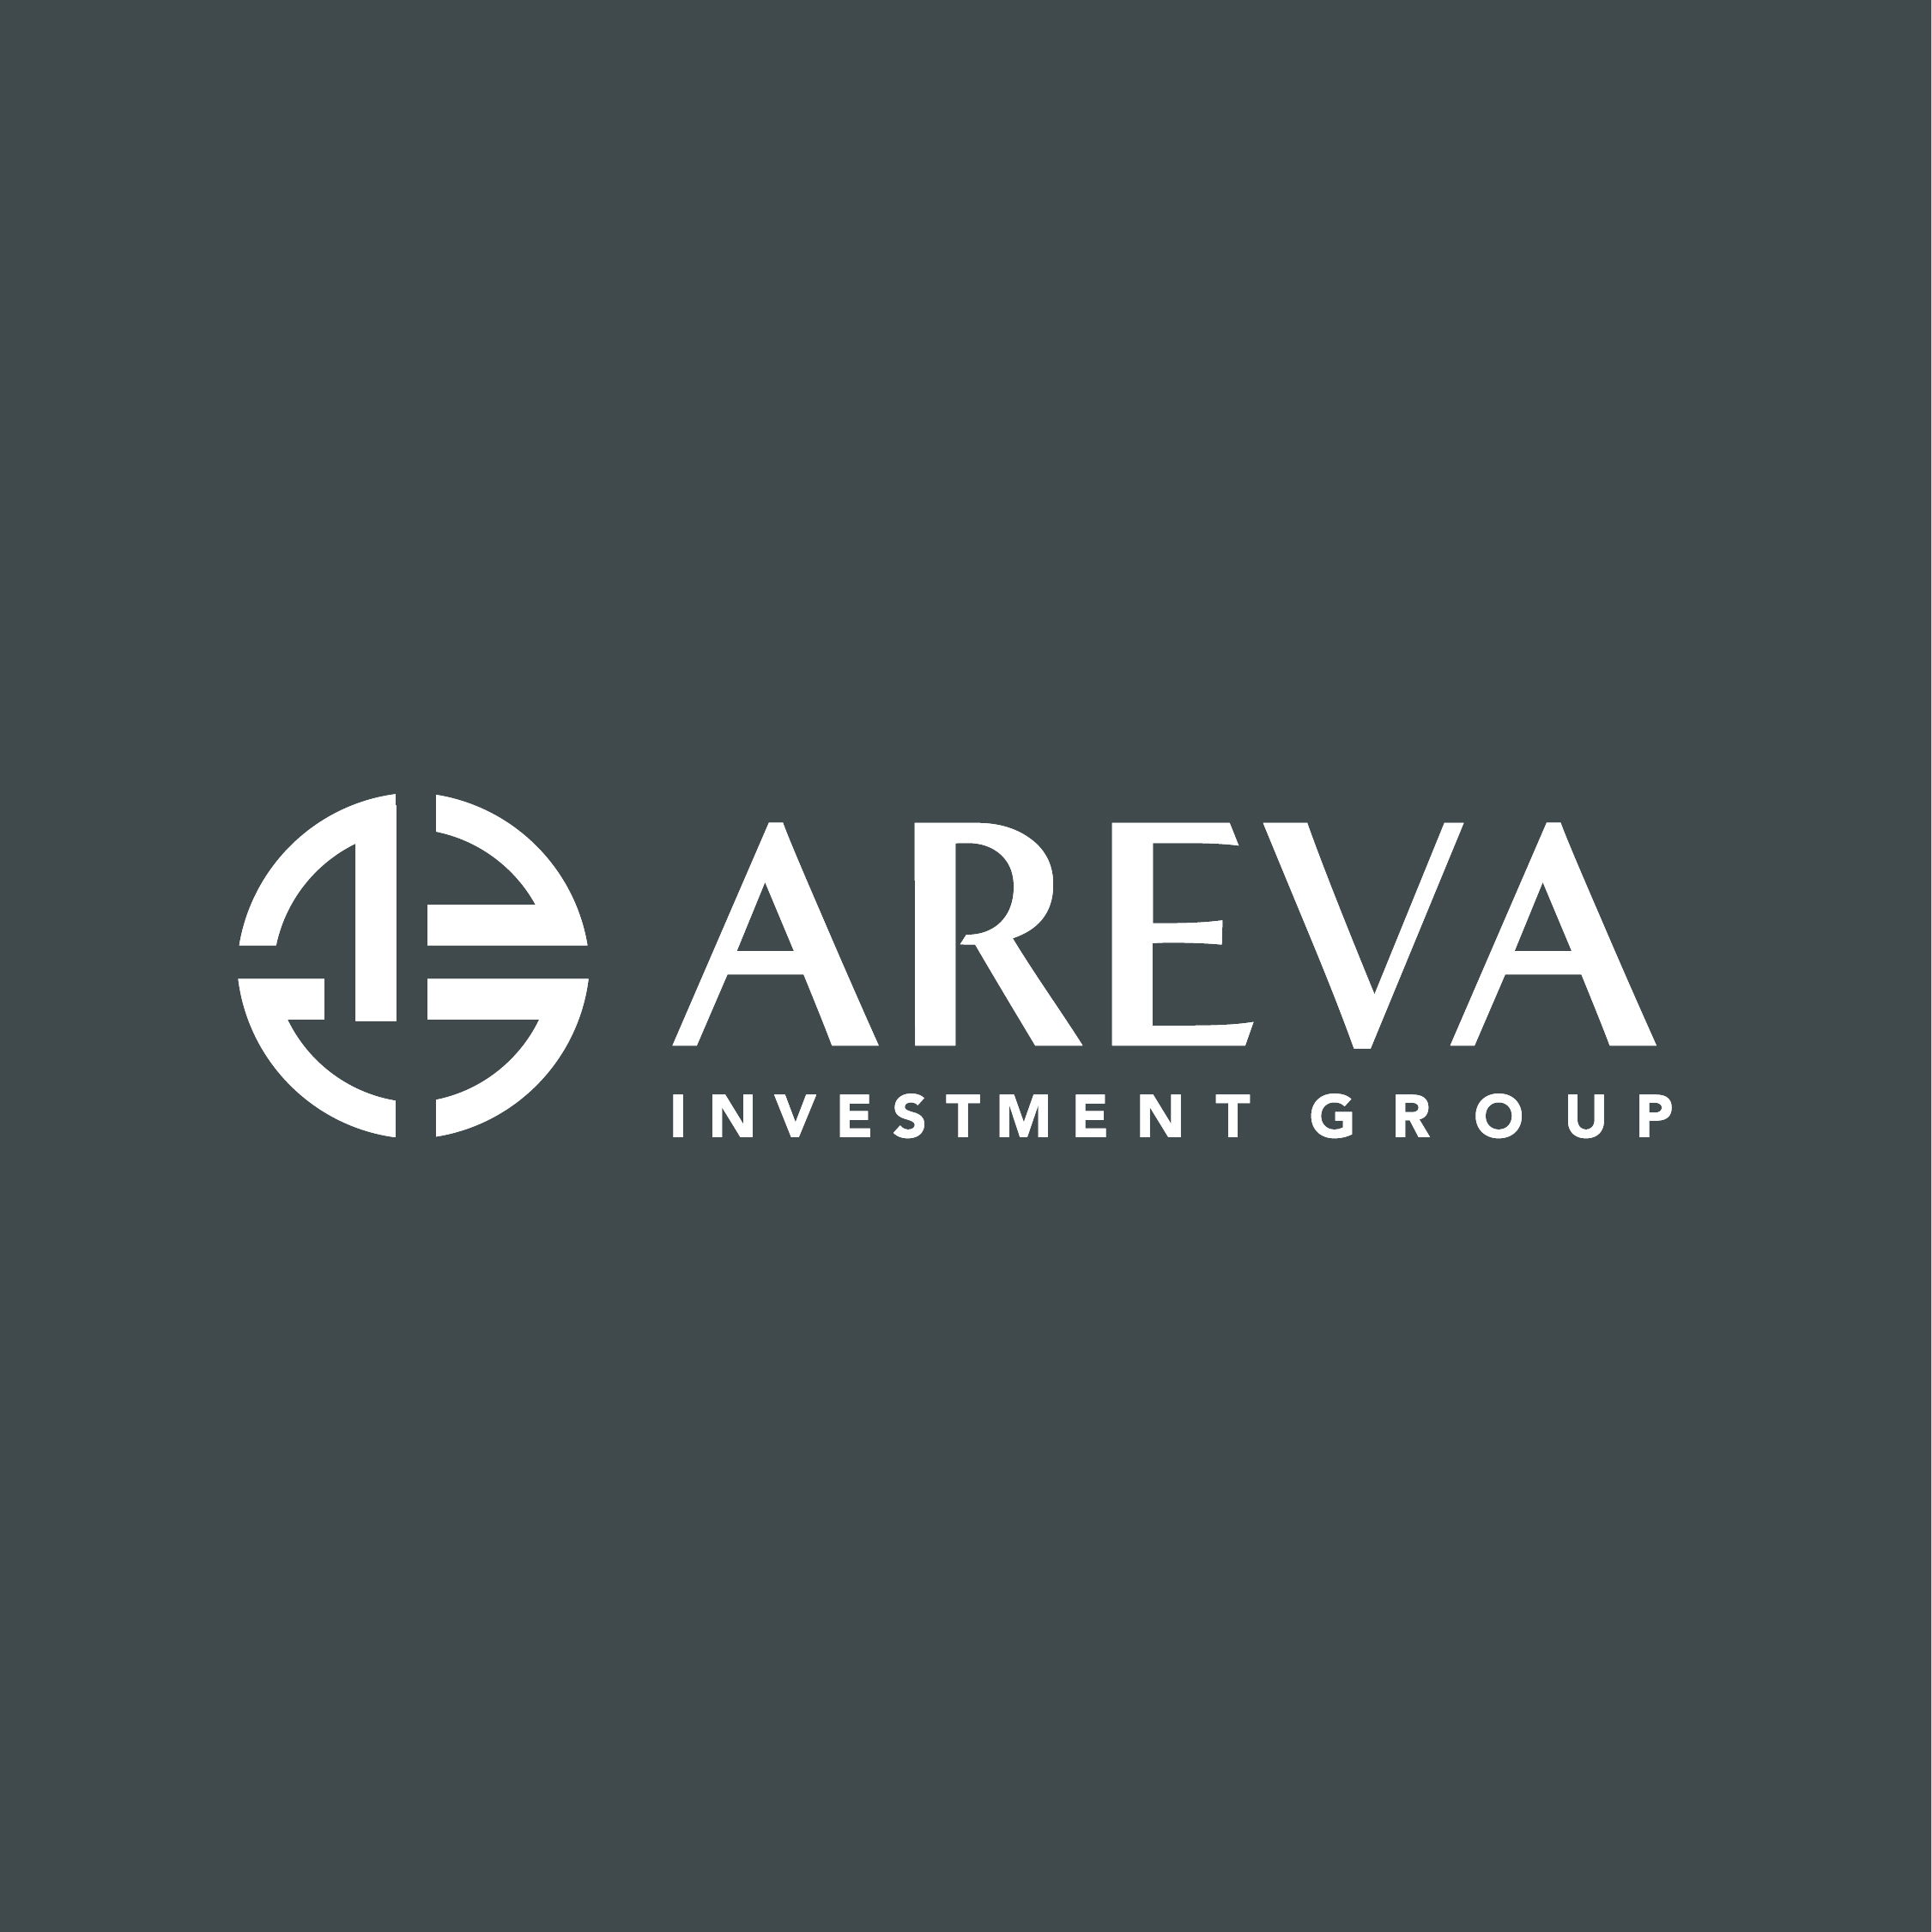 Areva Development